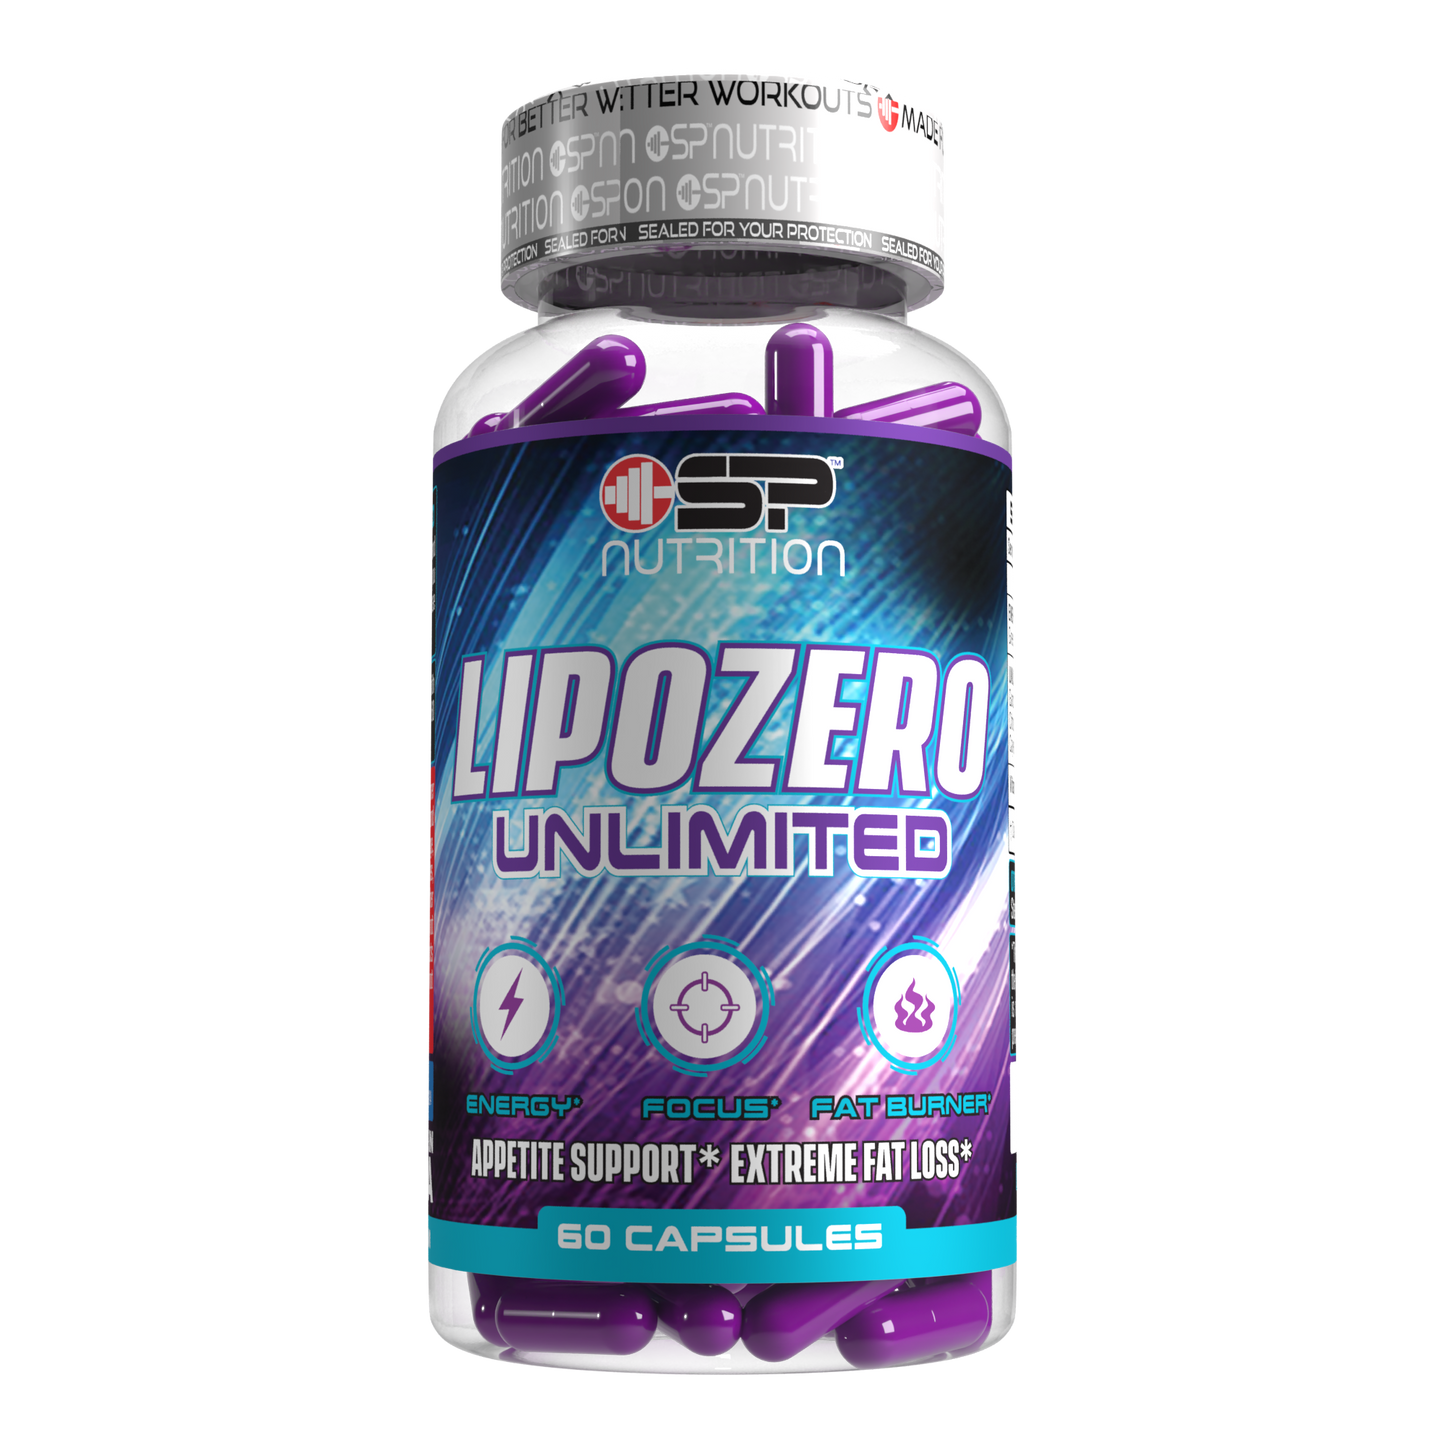 Lipozero Apettite Control + Lipozero Unlimited 60 Capsules